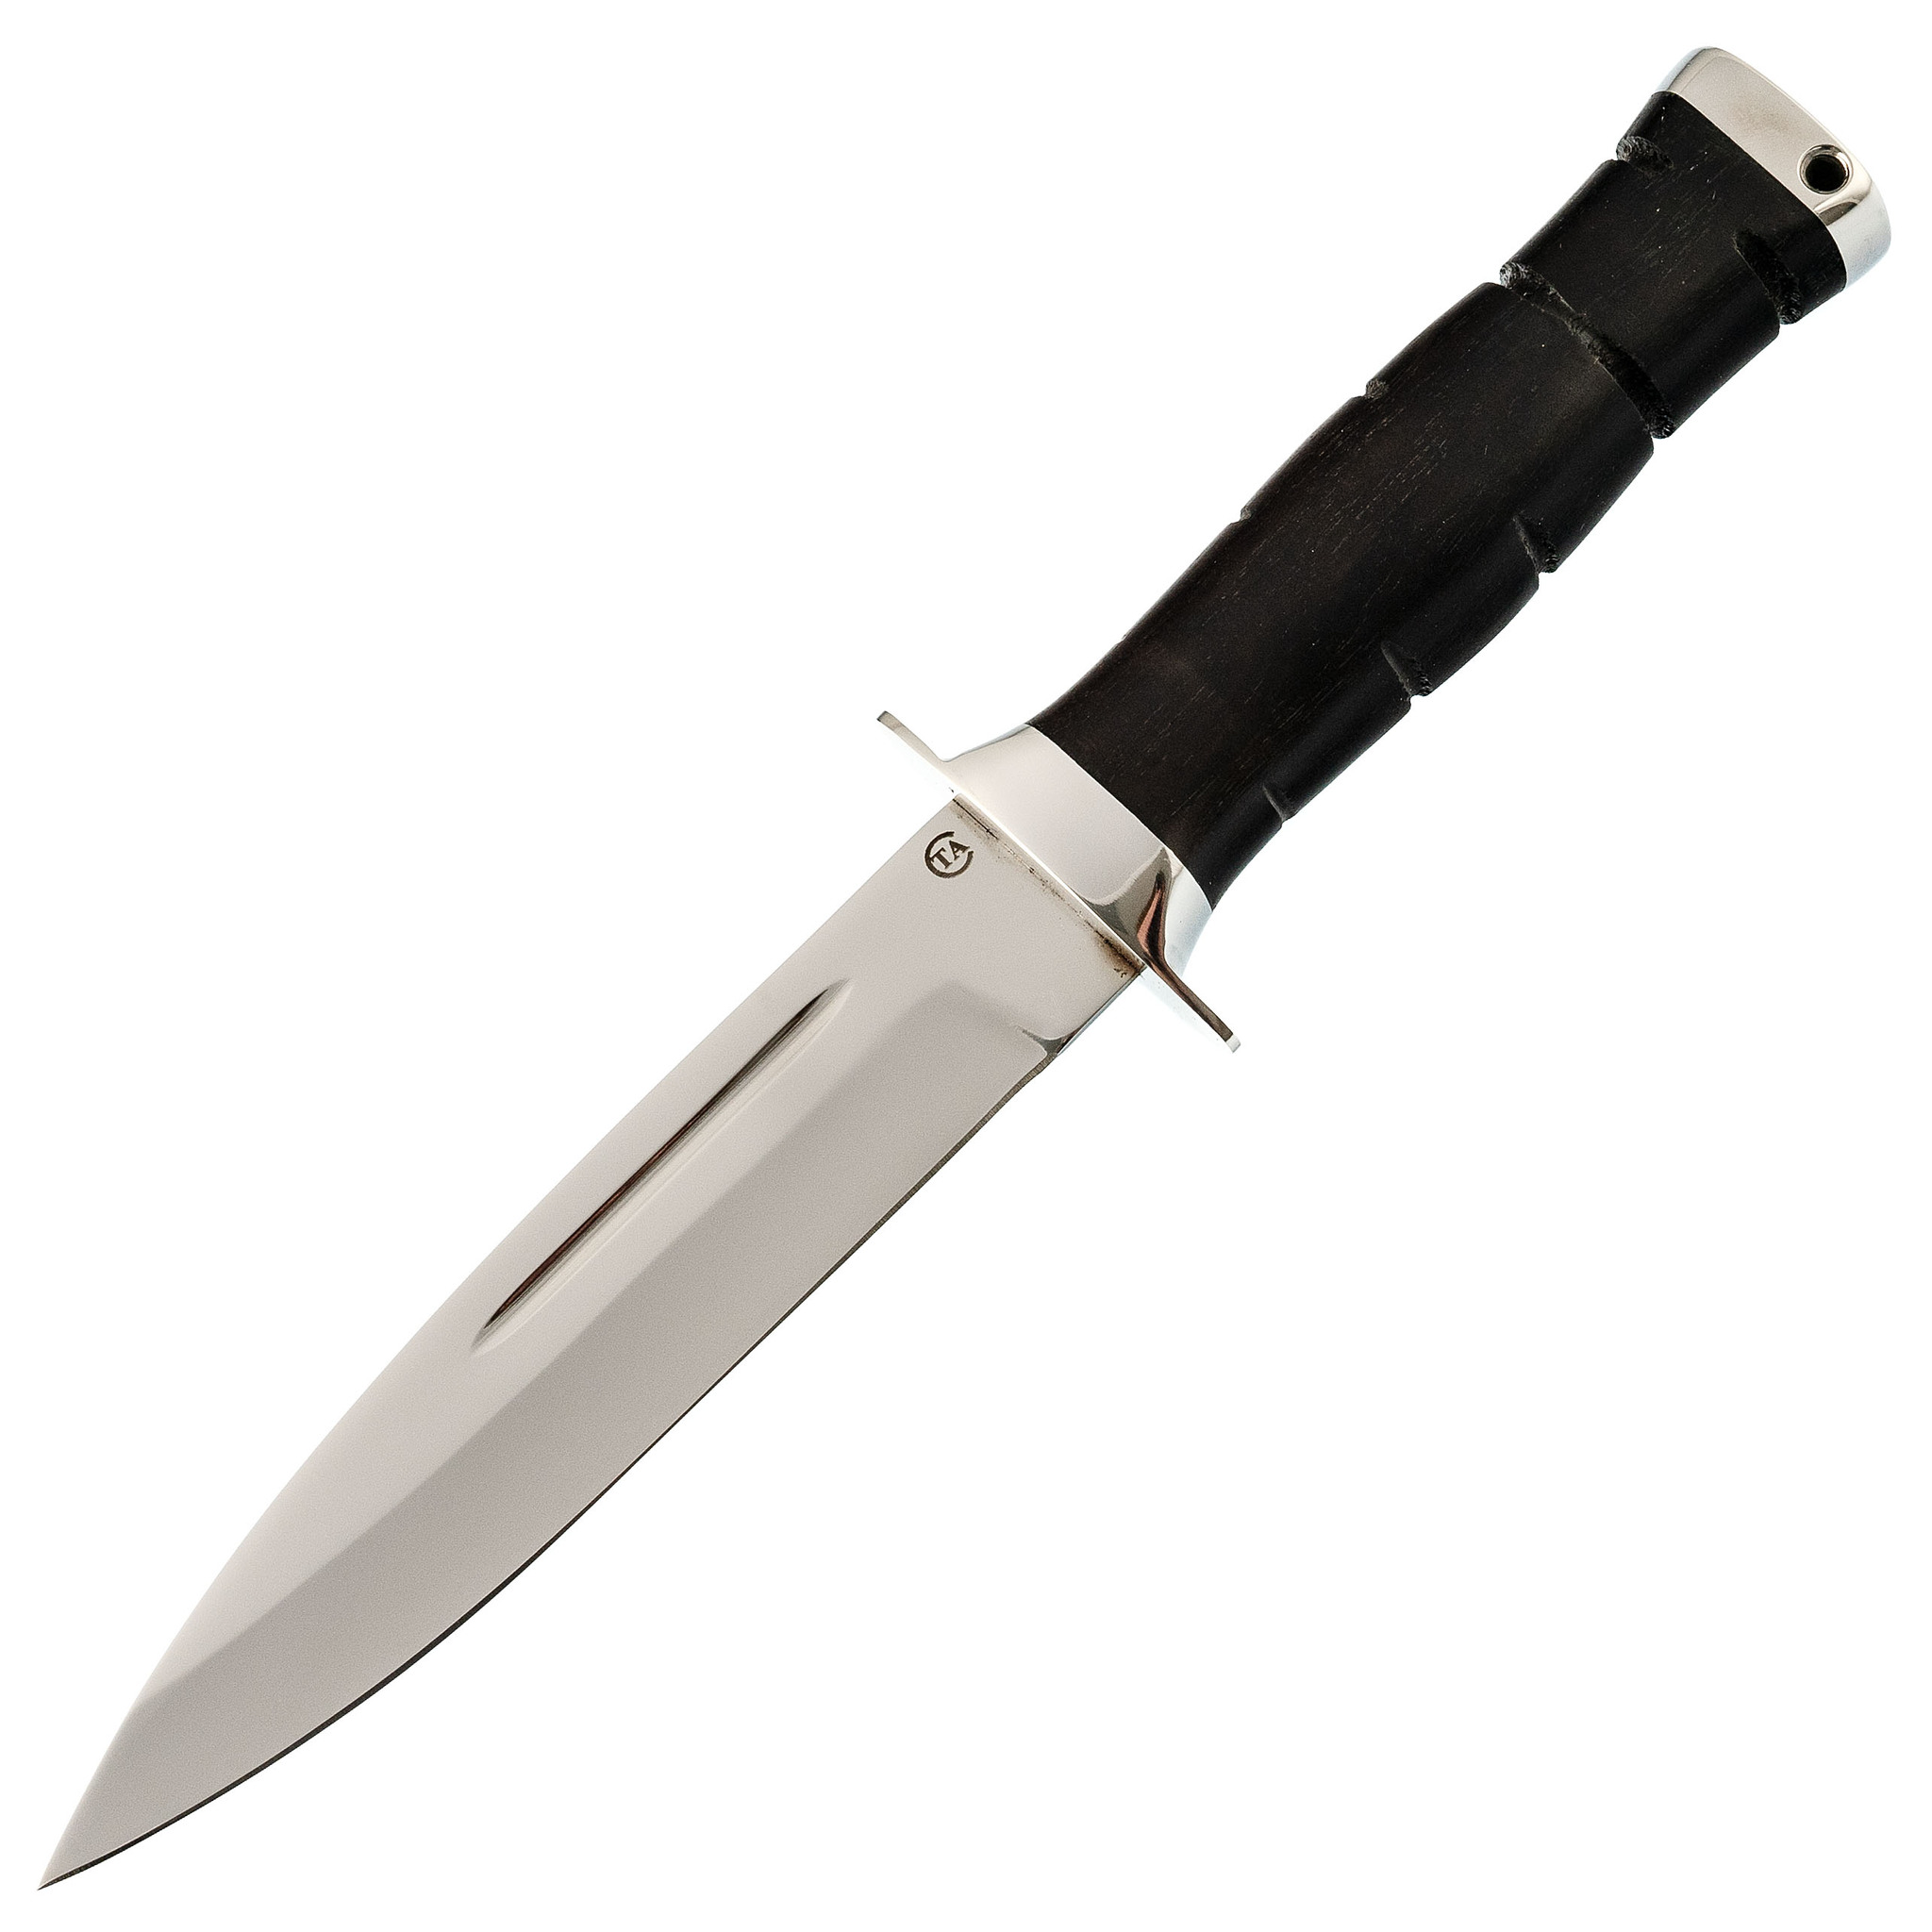 Нож Горец-3Уп, сталь 95х18, граб нож клык граб сталь 110х18 м шд аир